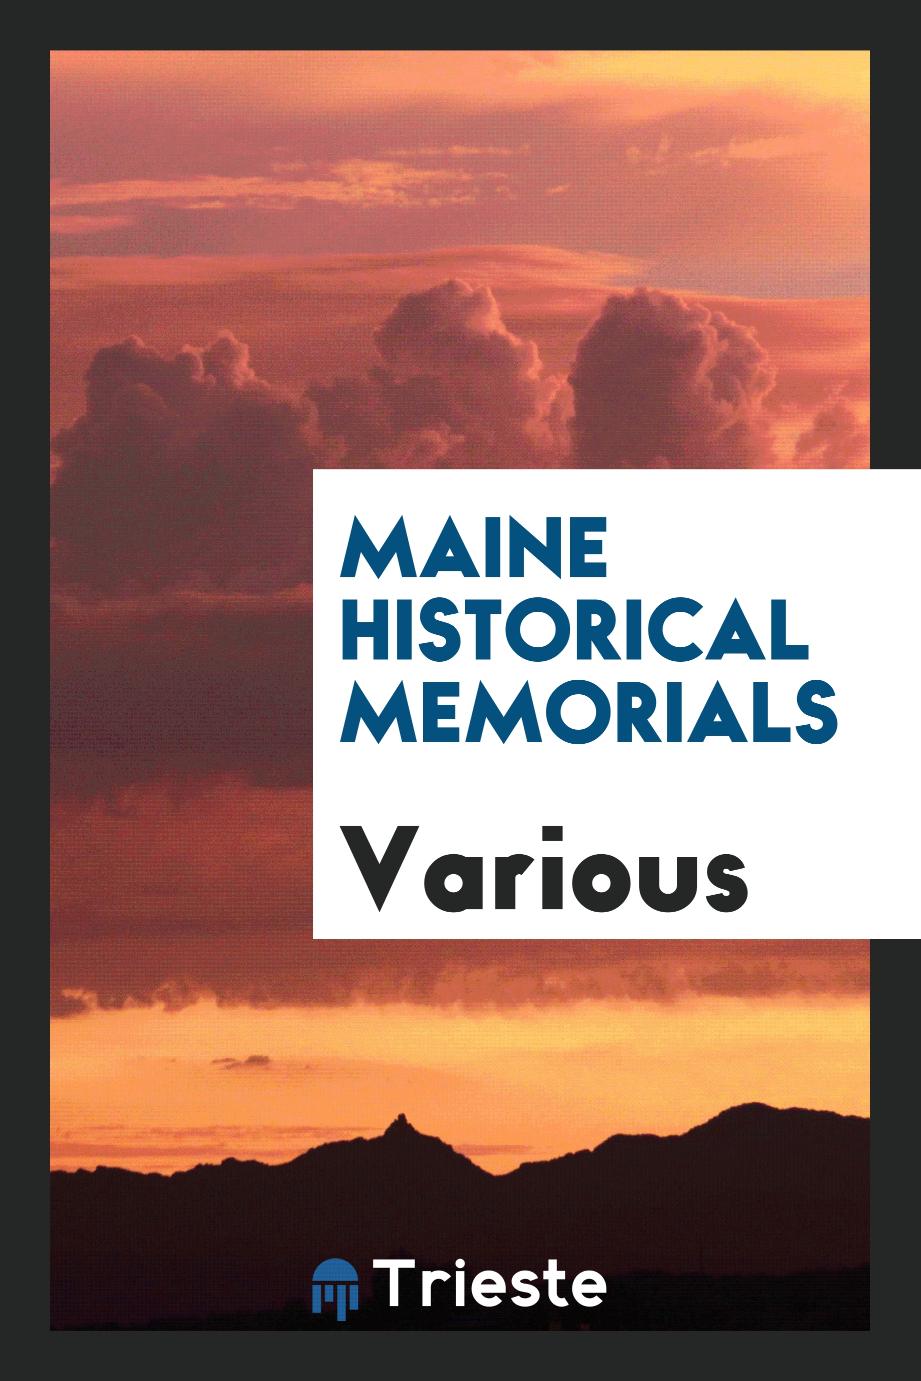 Maine historical memorials